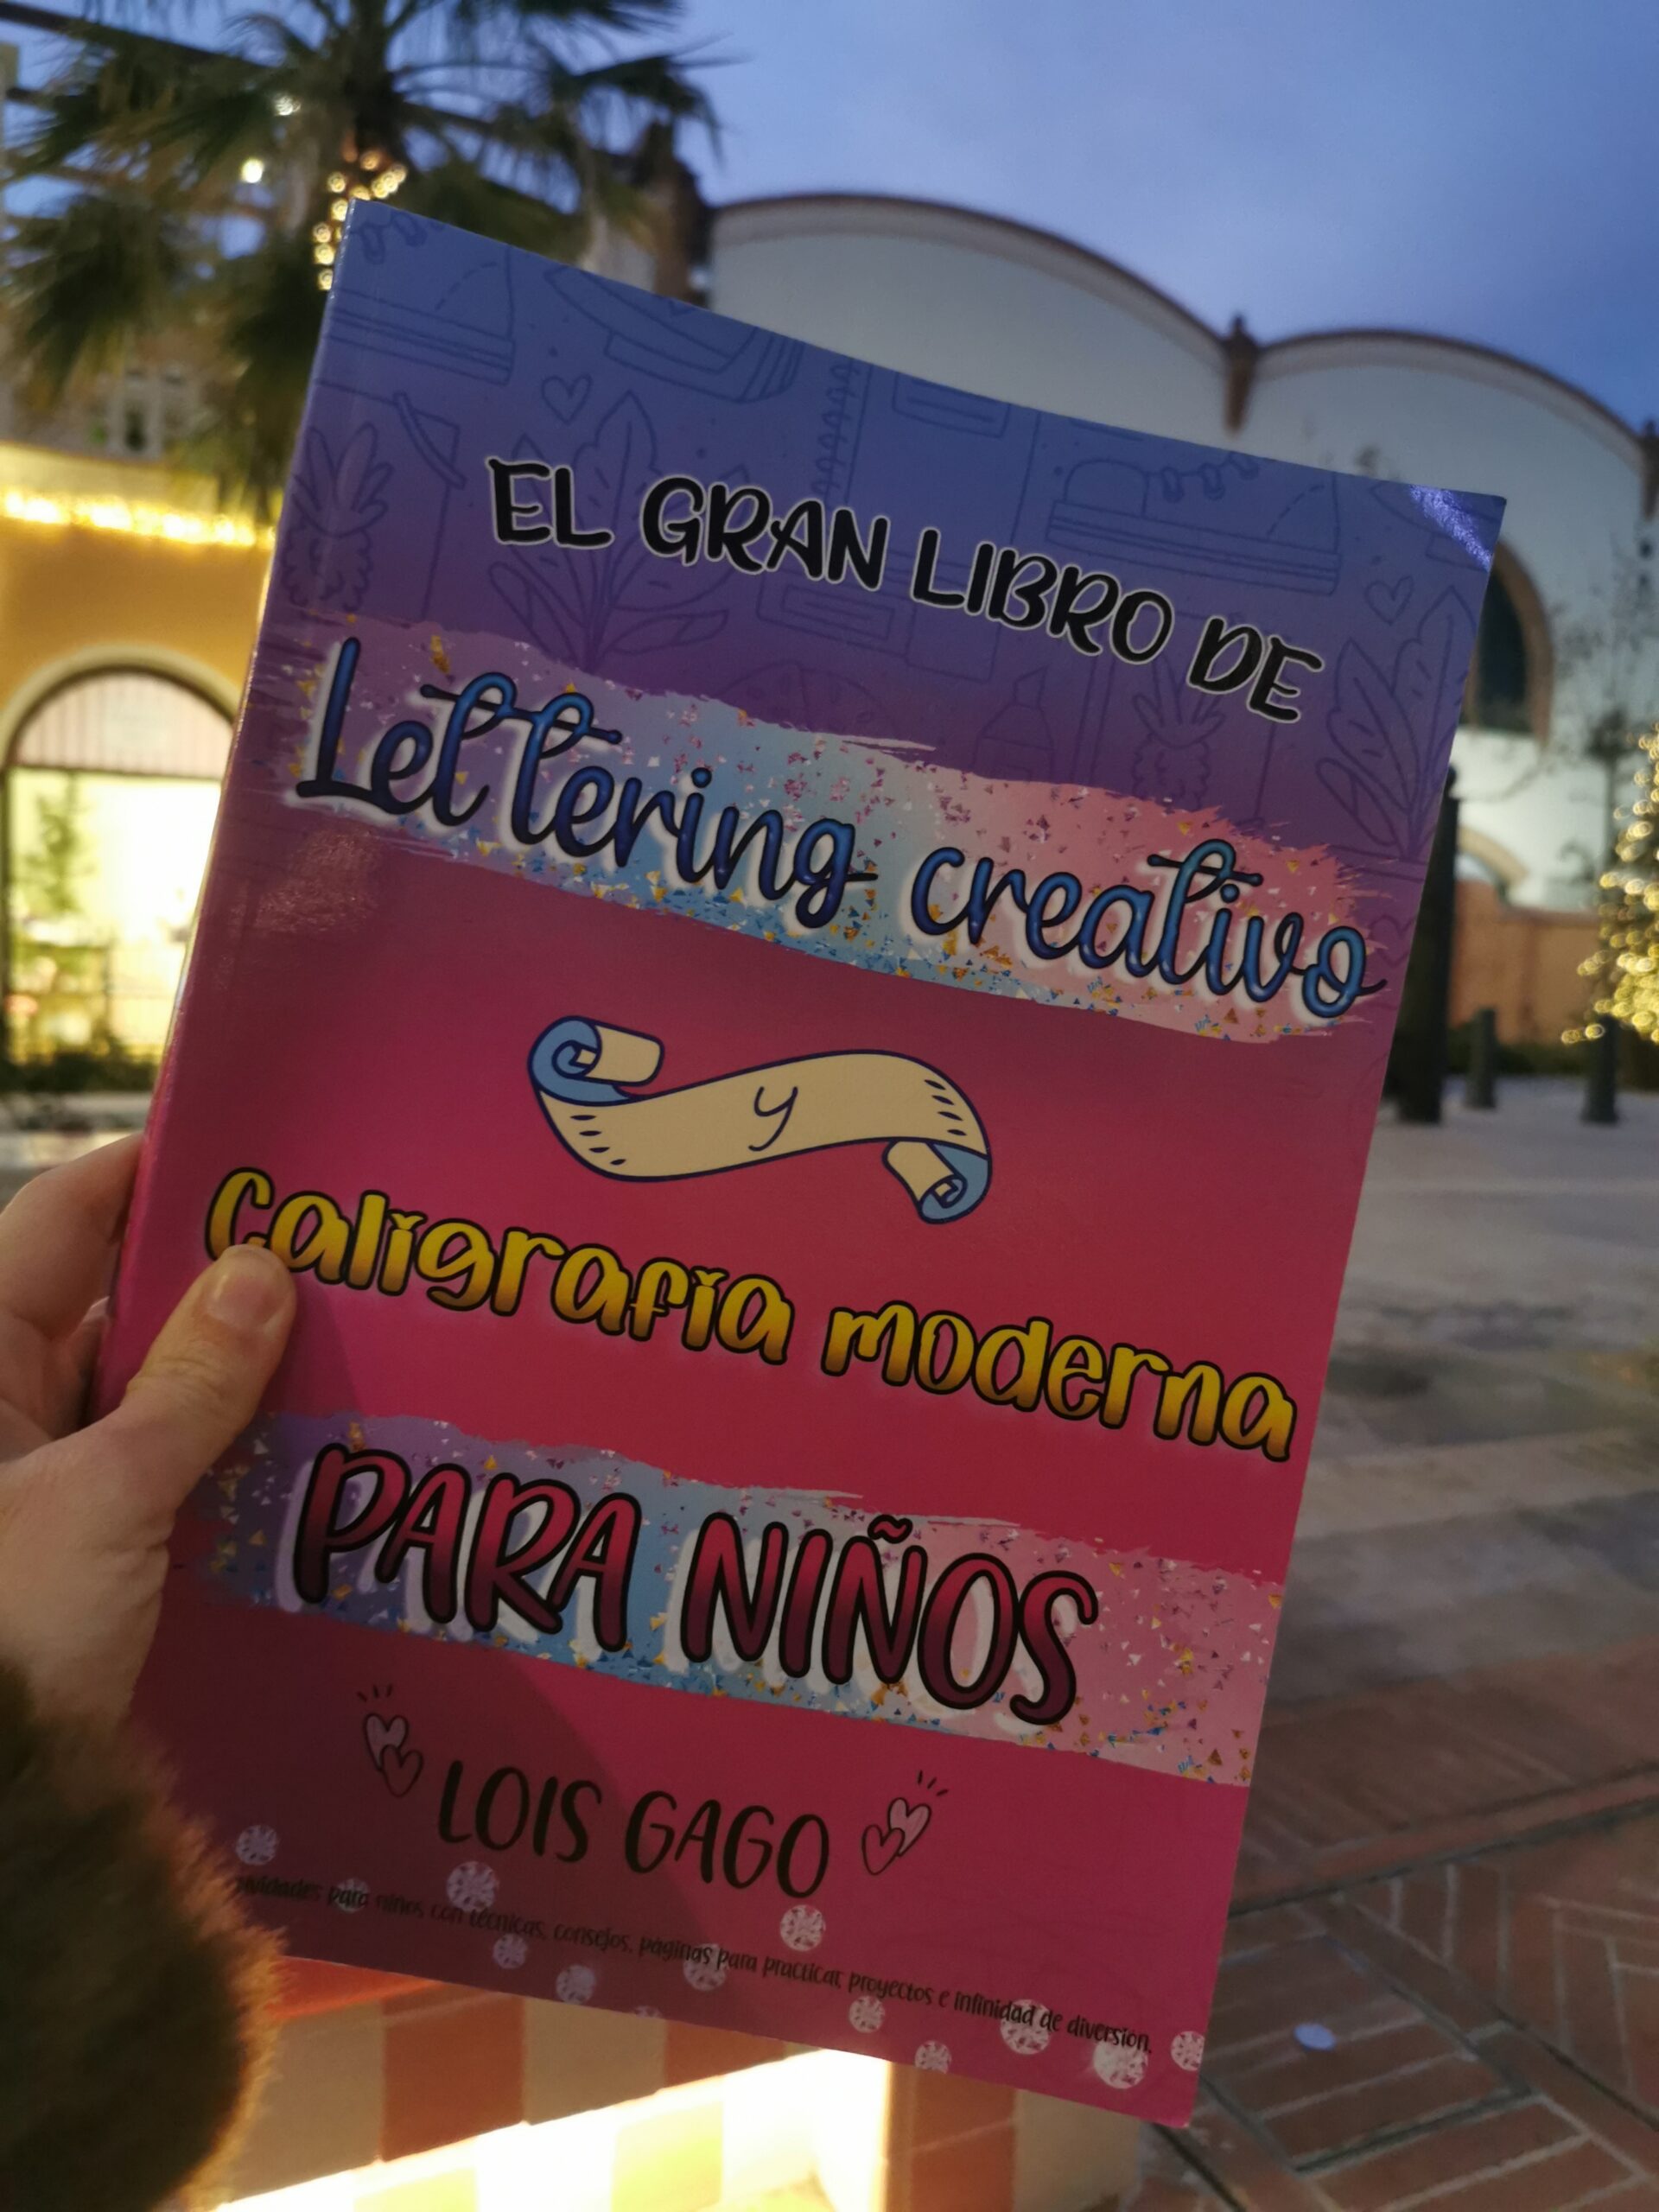 El gran libro de Lettering creativo y caligrafía moderna para niños